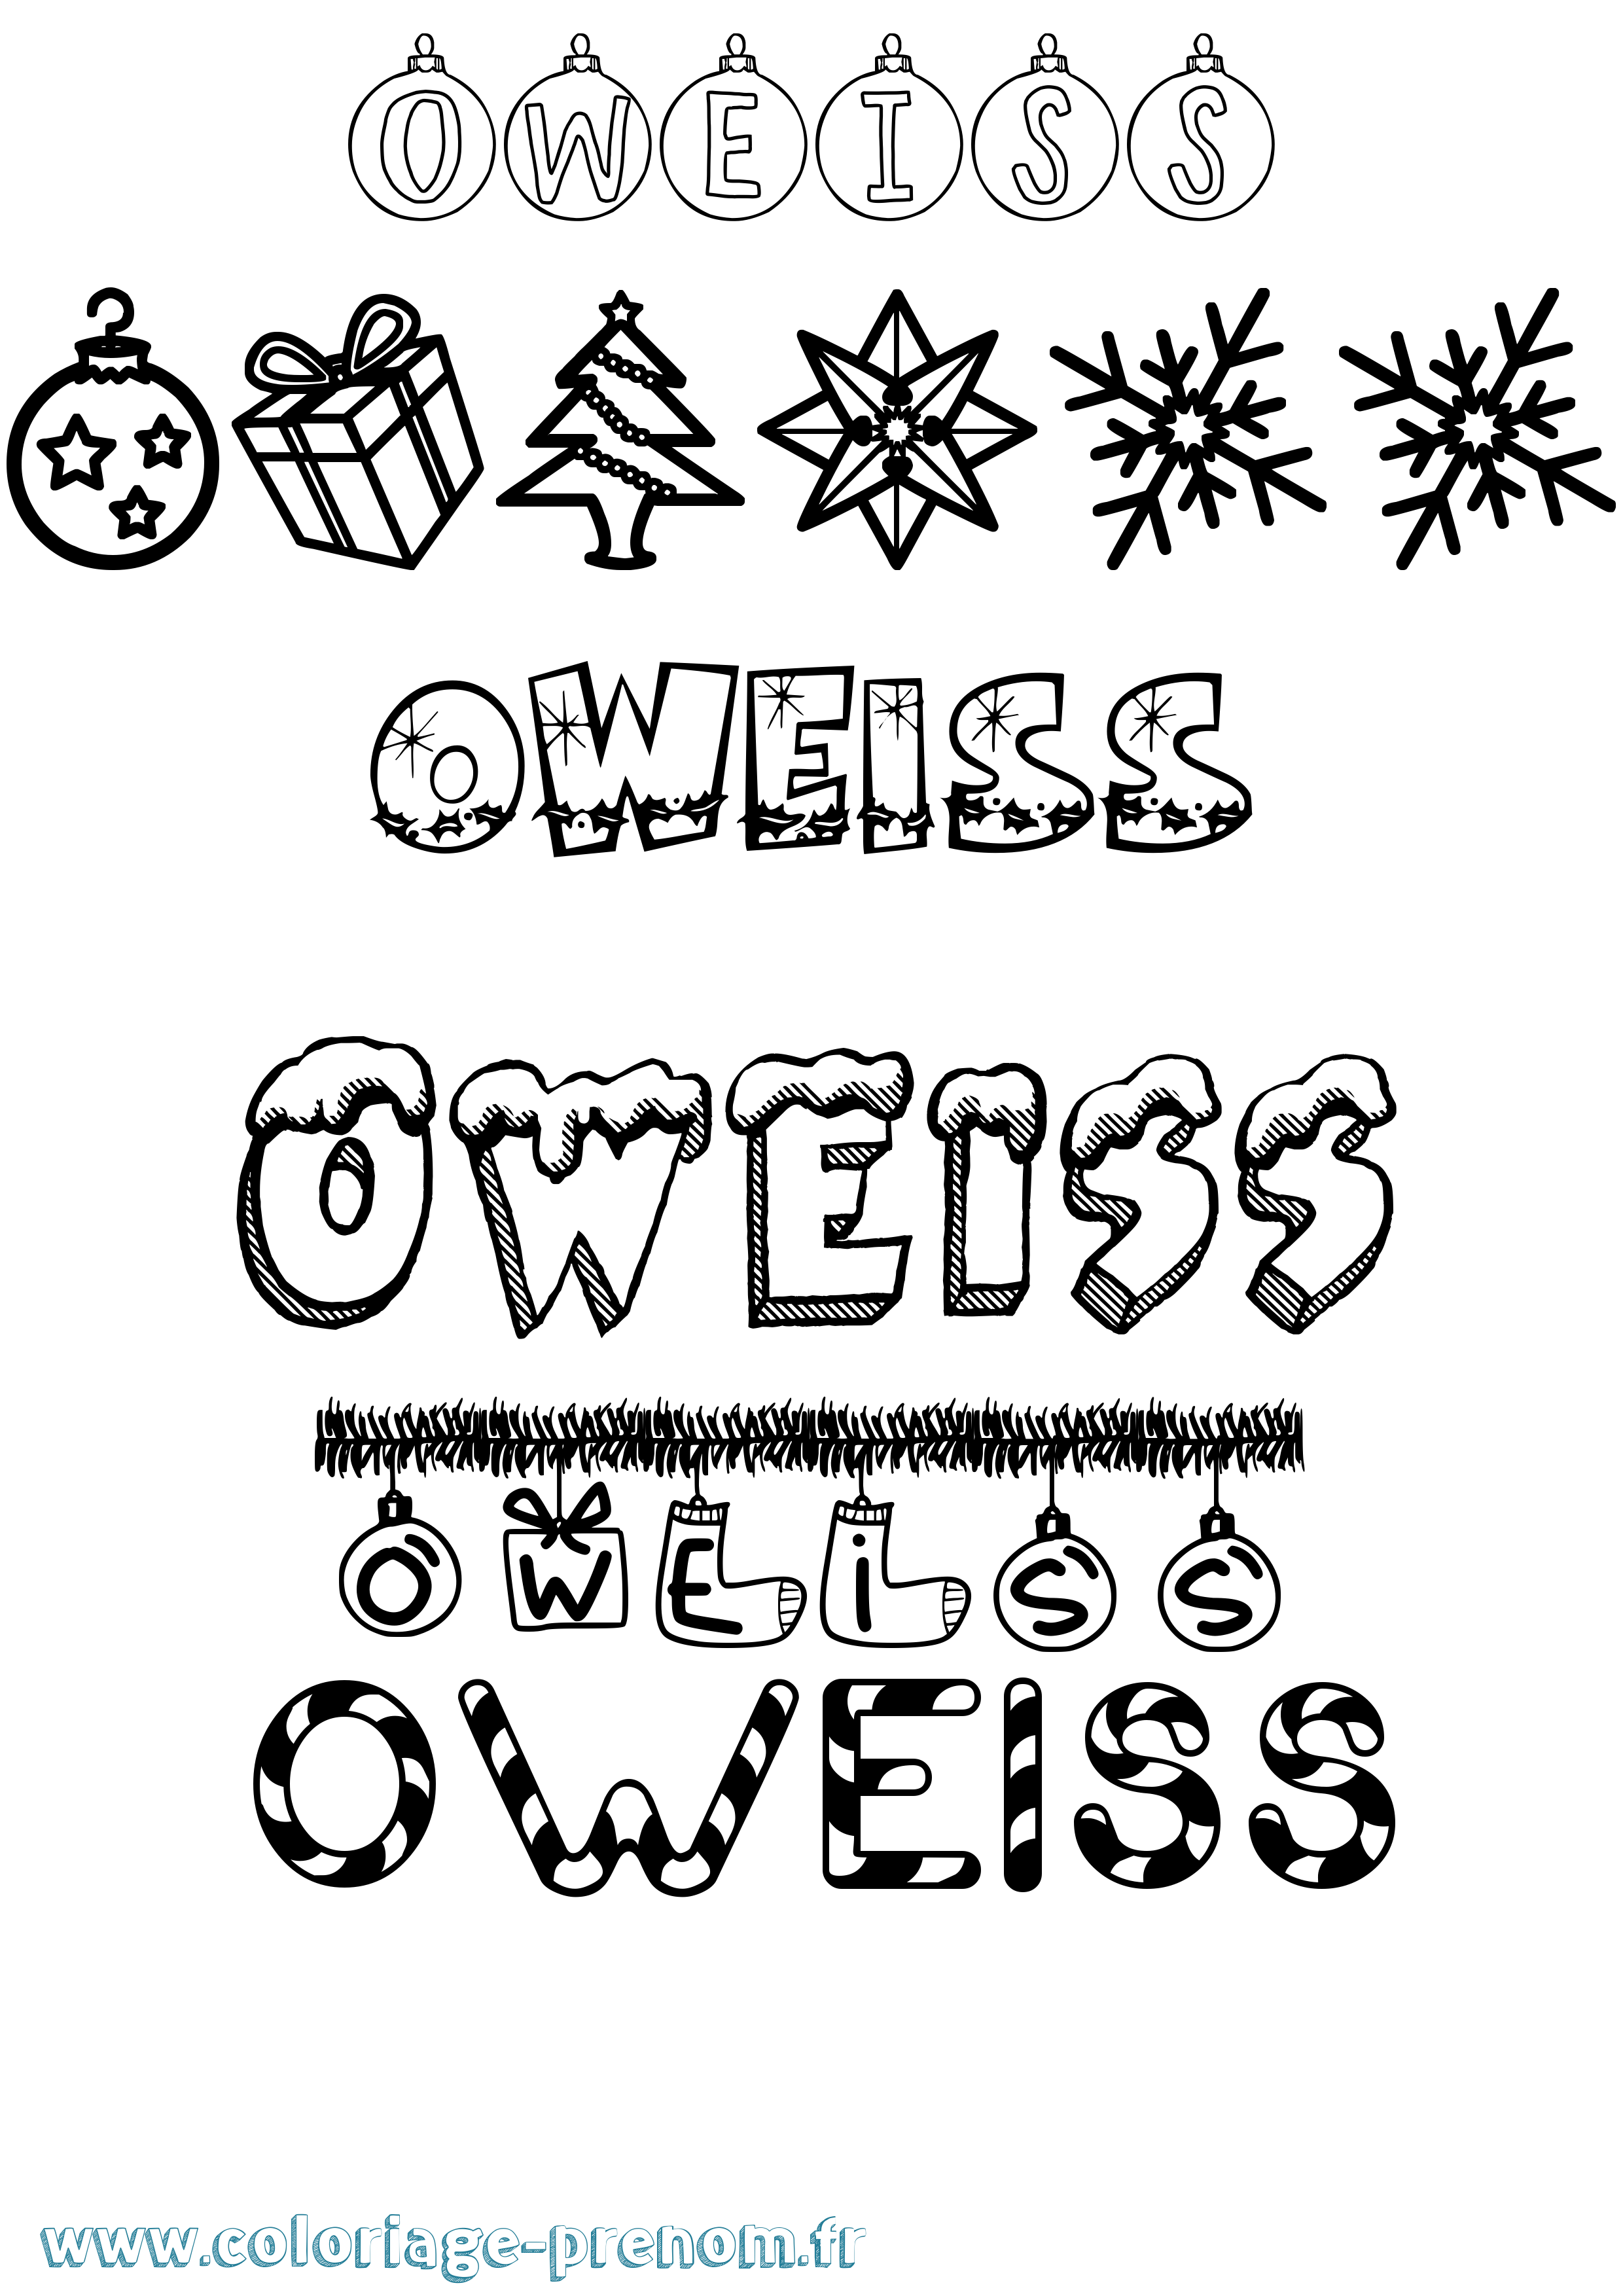 Coloriage prénom Oweiss Noël